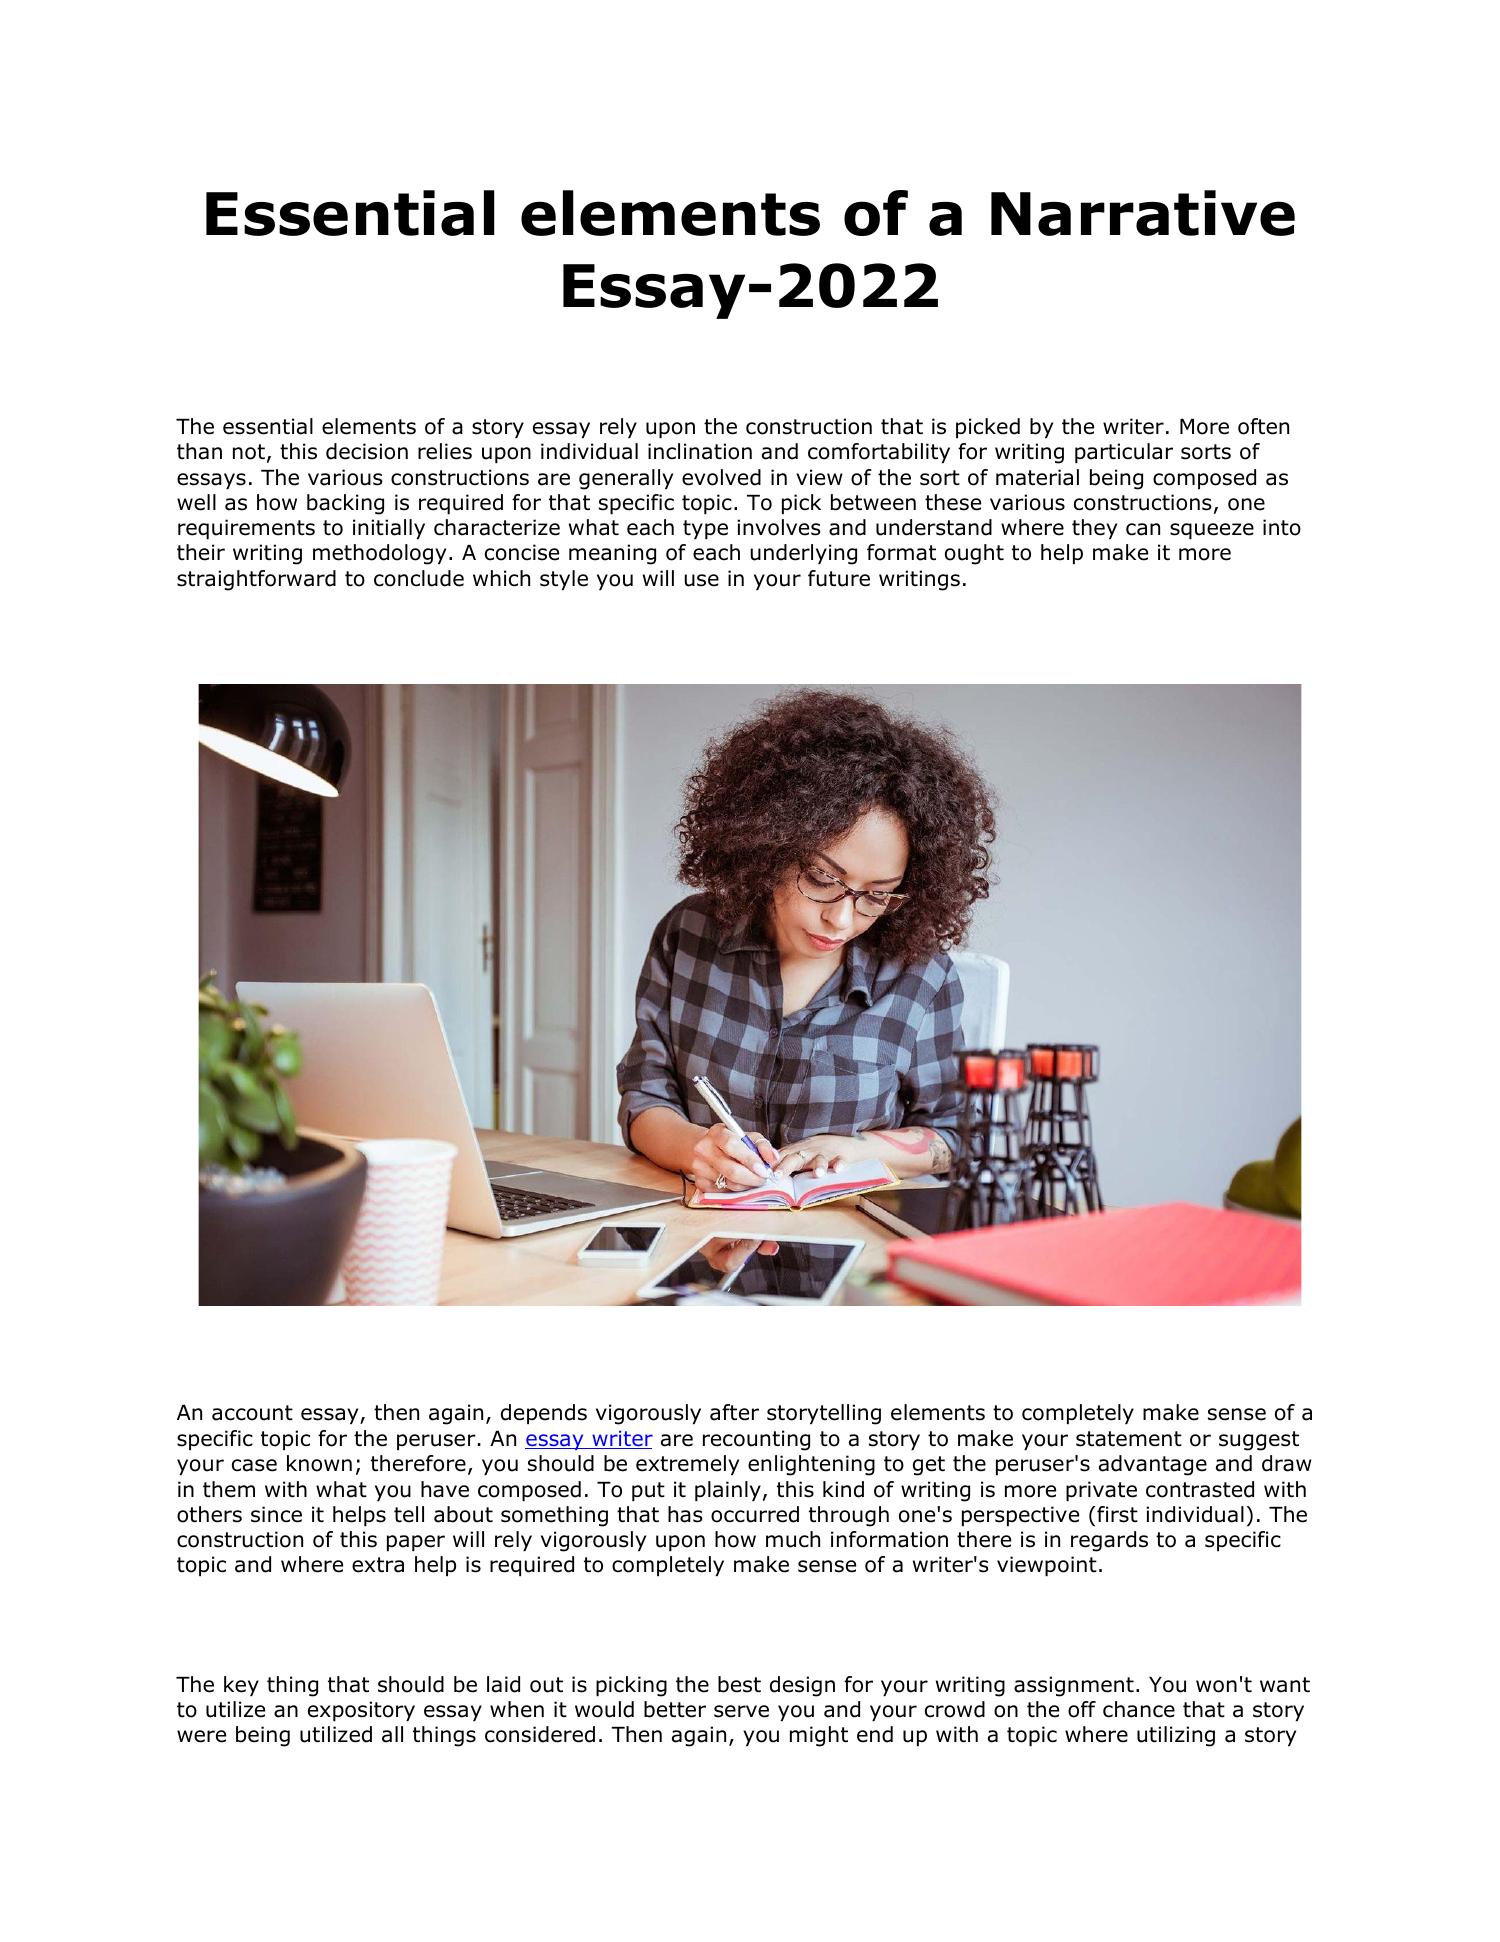 elements of narrative essay pdf